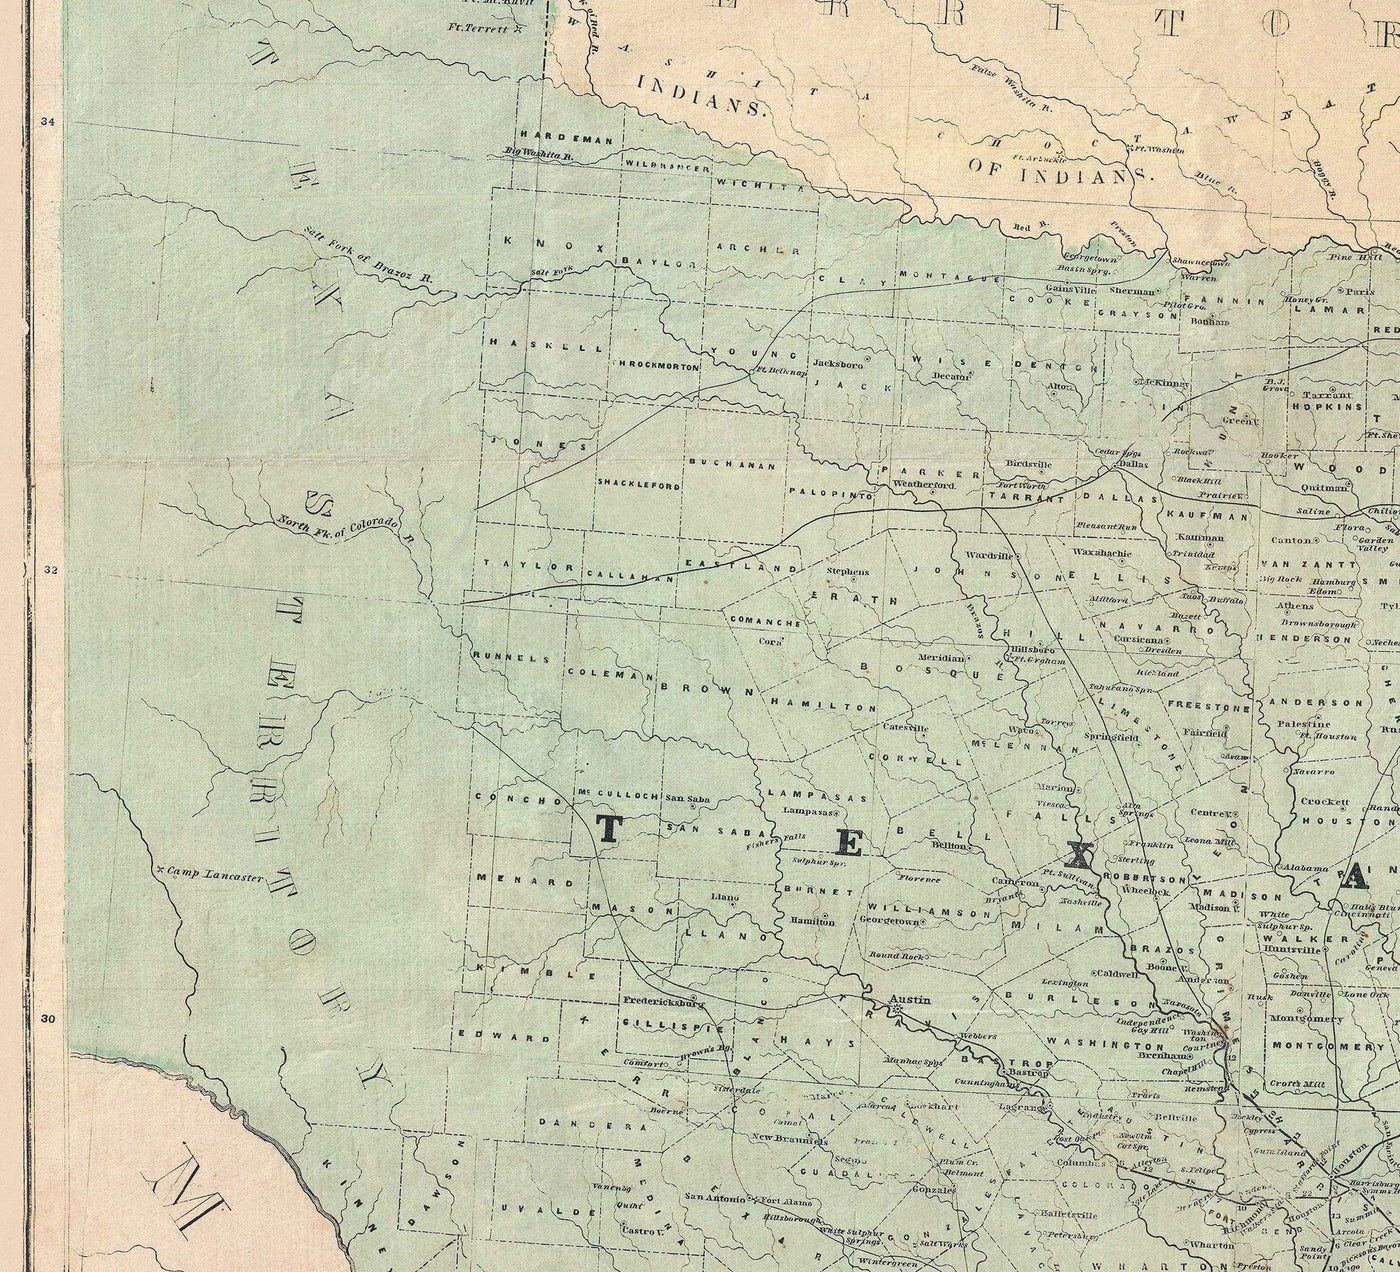 Lloyd's Map of the Southern States, 1862 - Raro y antiguo mapa de la Guerra Civil de la Confederación - USA